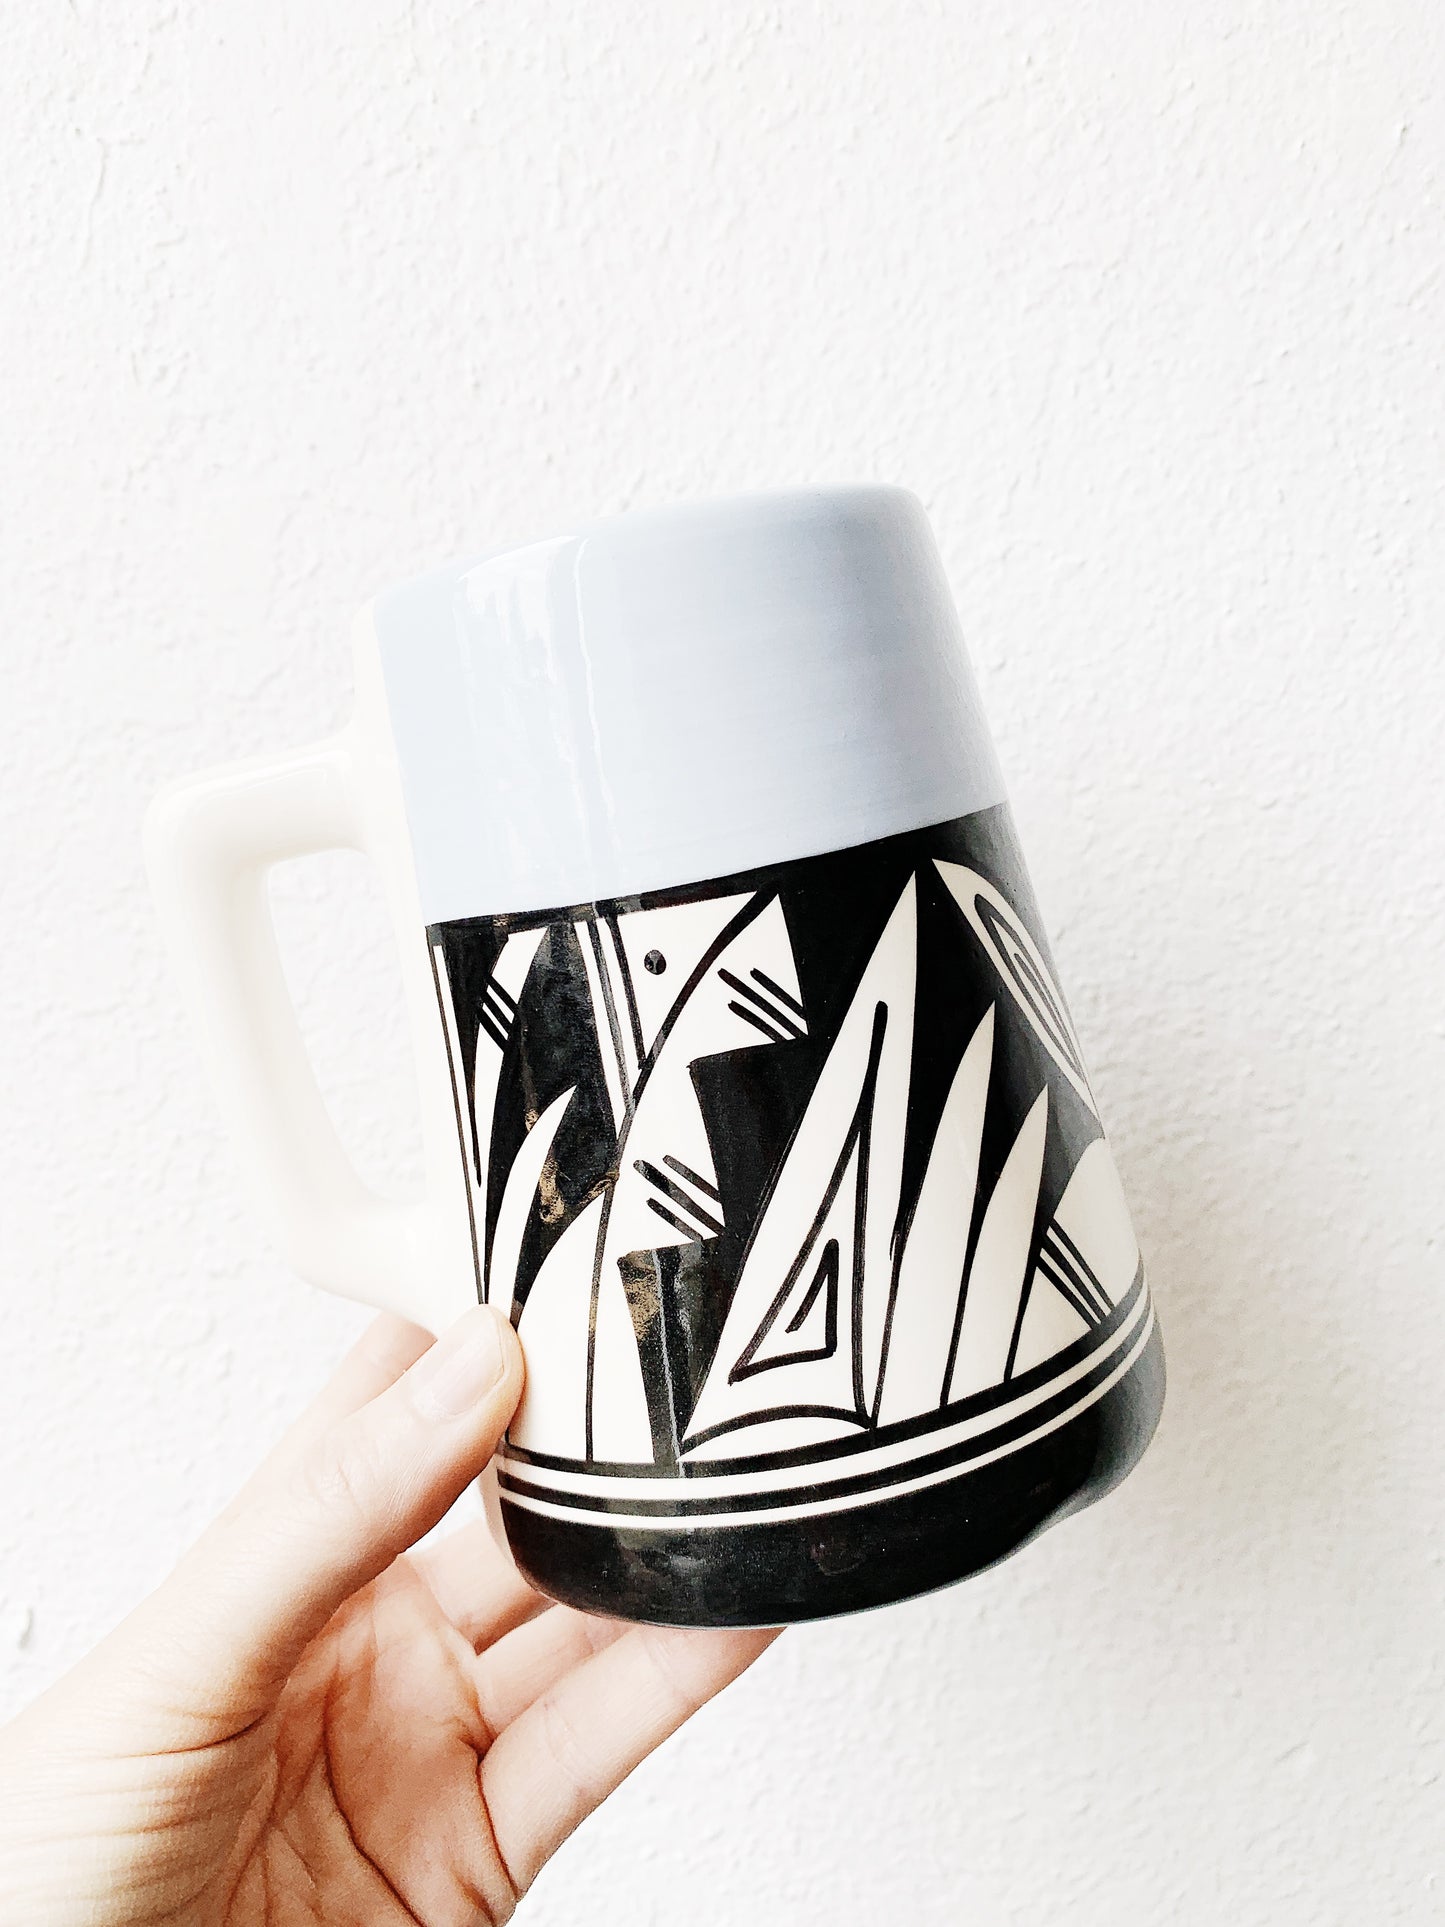 Large Ute Mountain Tribe Pottery Mug